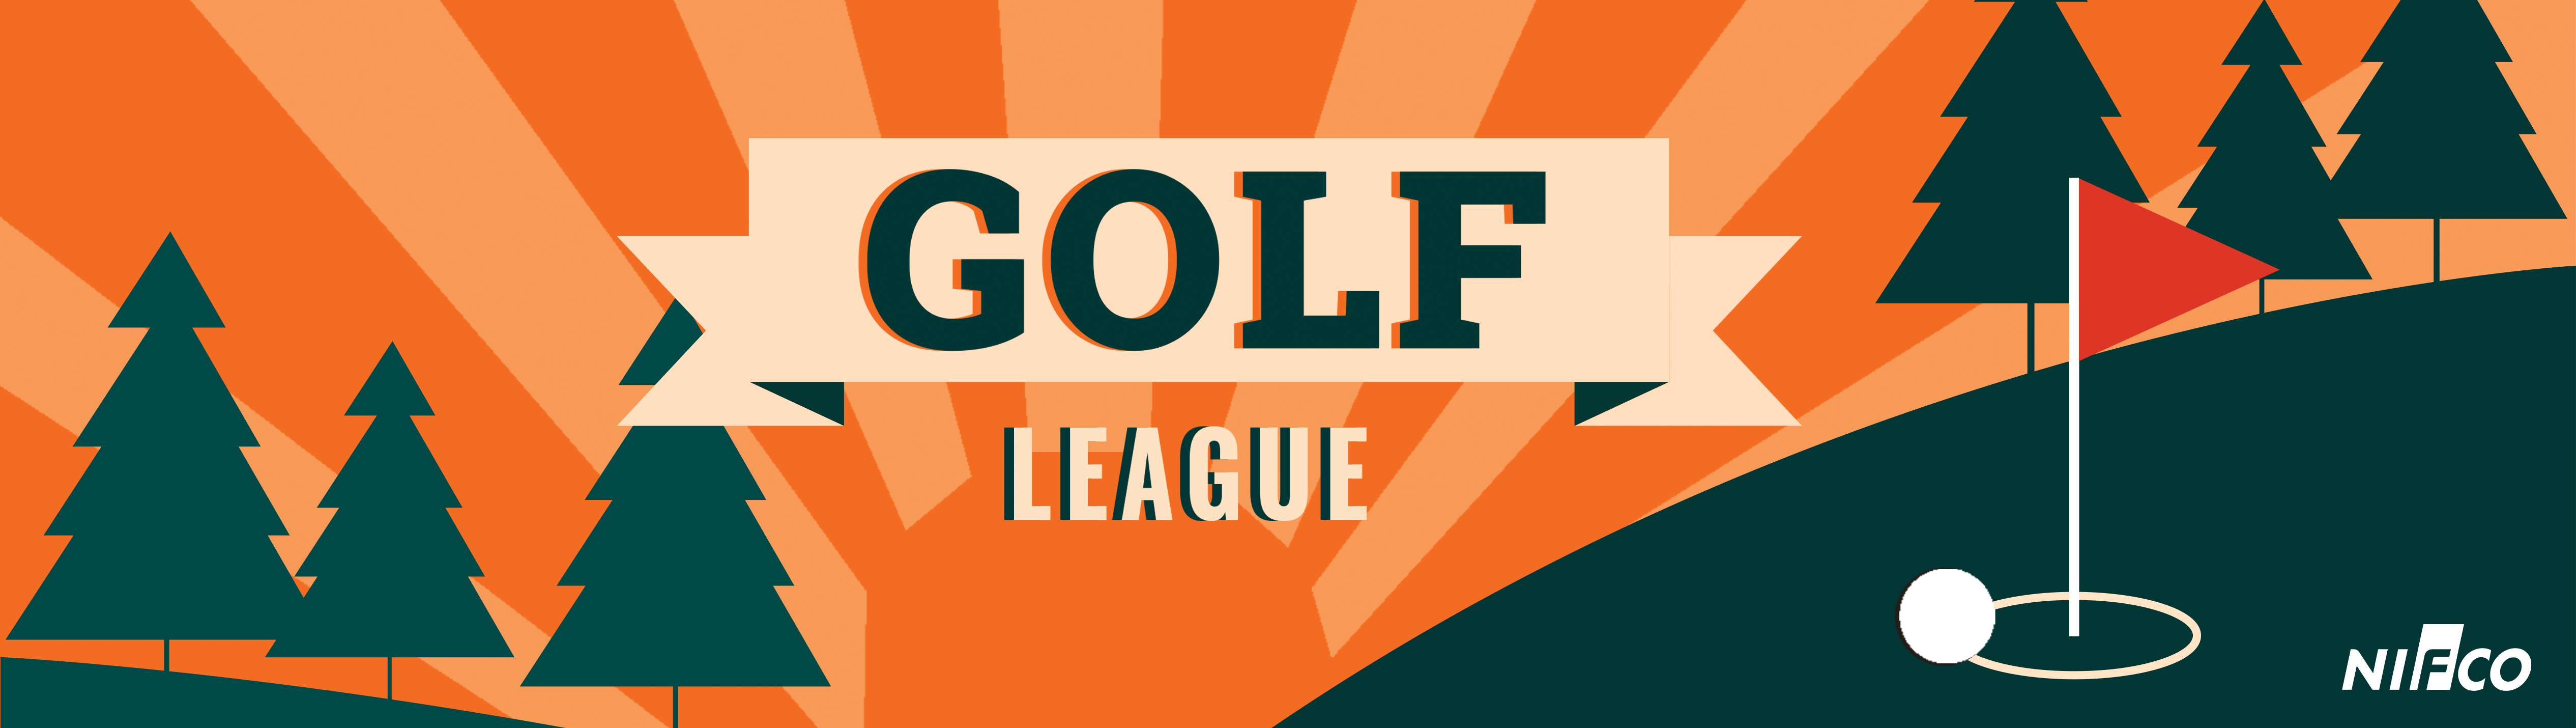 Golf League Website banner